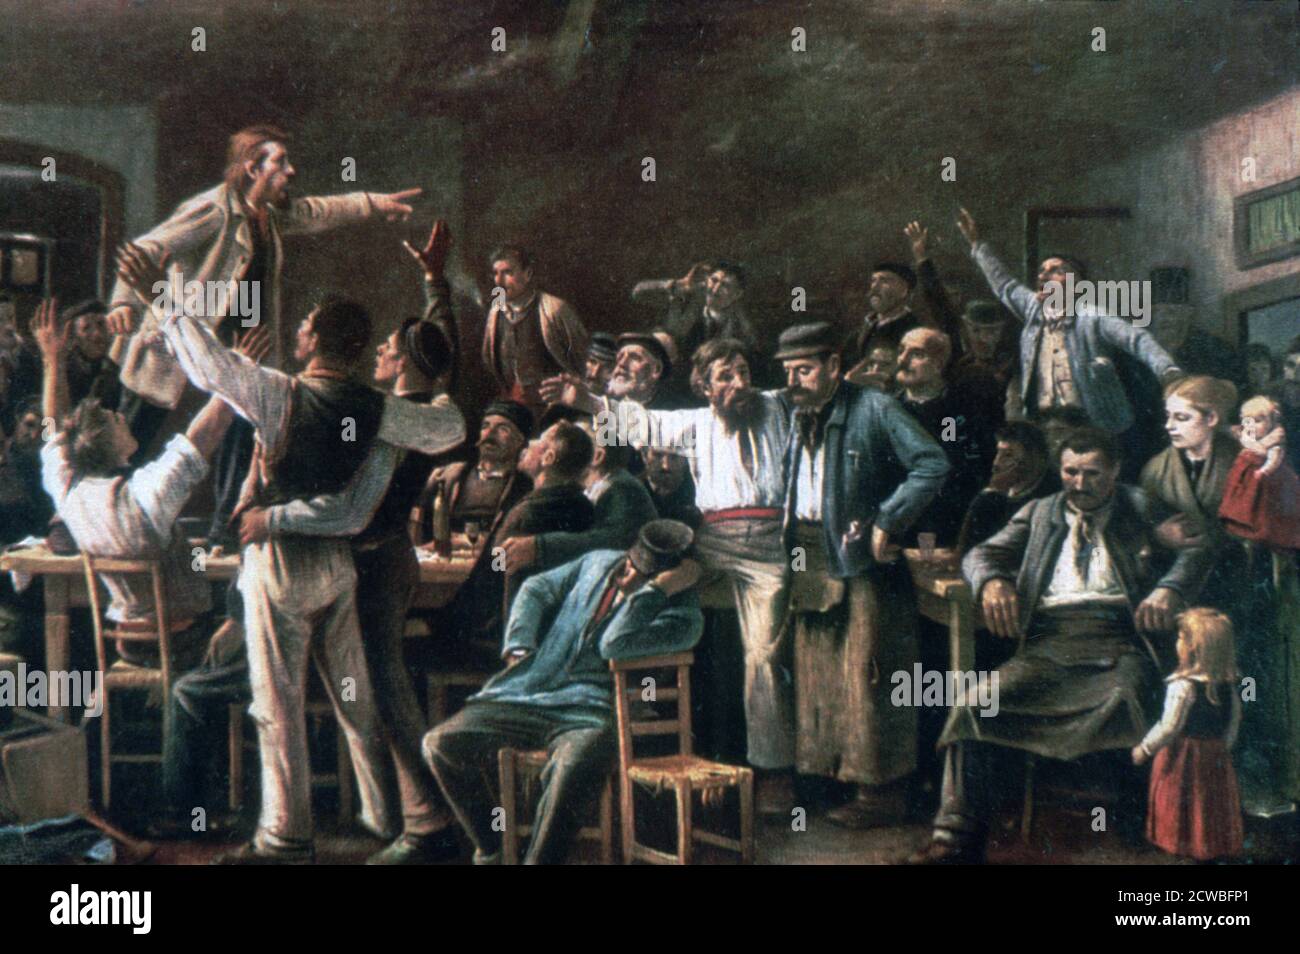 Strike', 1895. Artiste: Mihaly Munkacsy. Mihaly Munkacsy (1844-1900) est un peintre hongrois. Il a acquis une réputation internationale avec ses images de genre et ses peintures bibliques à grande échelle. Banque D'Images